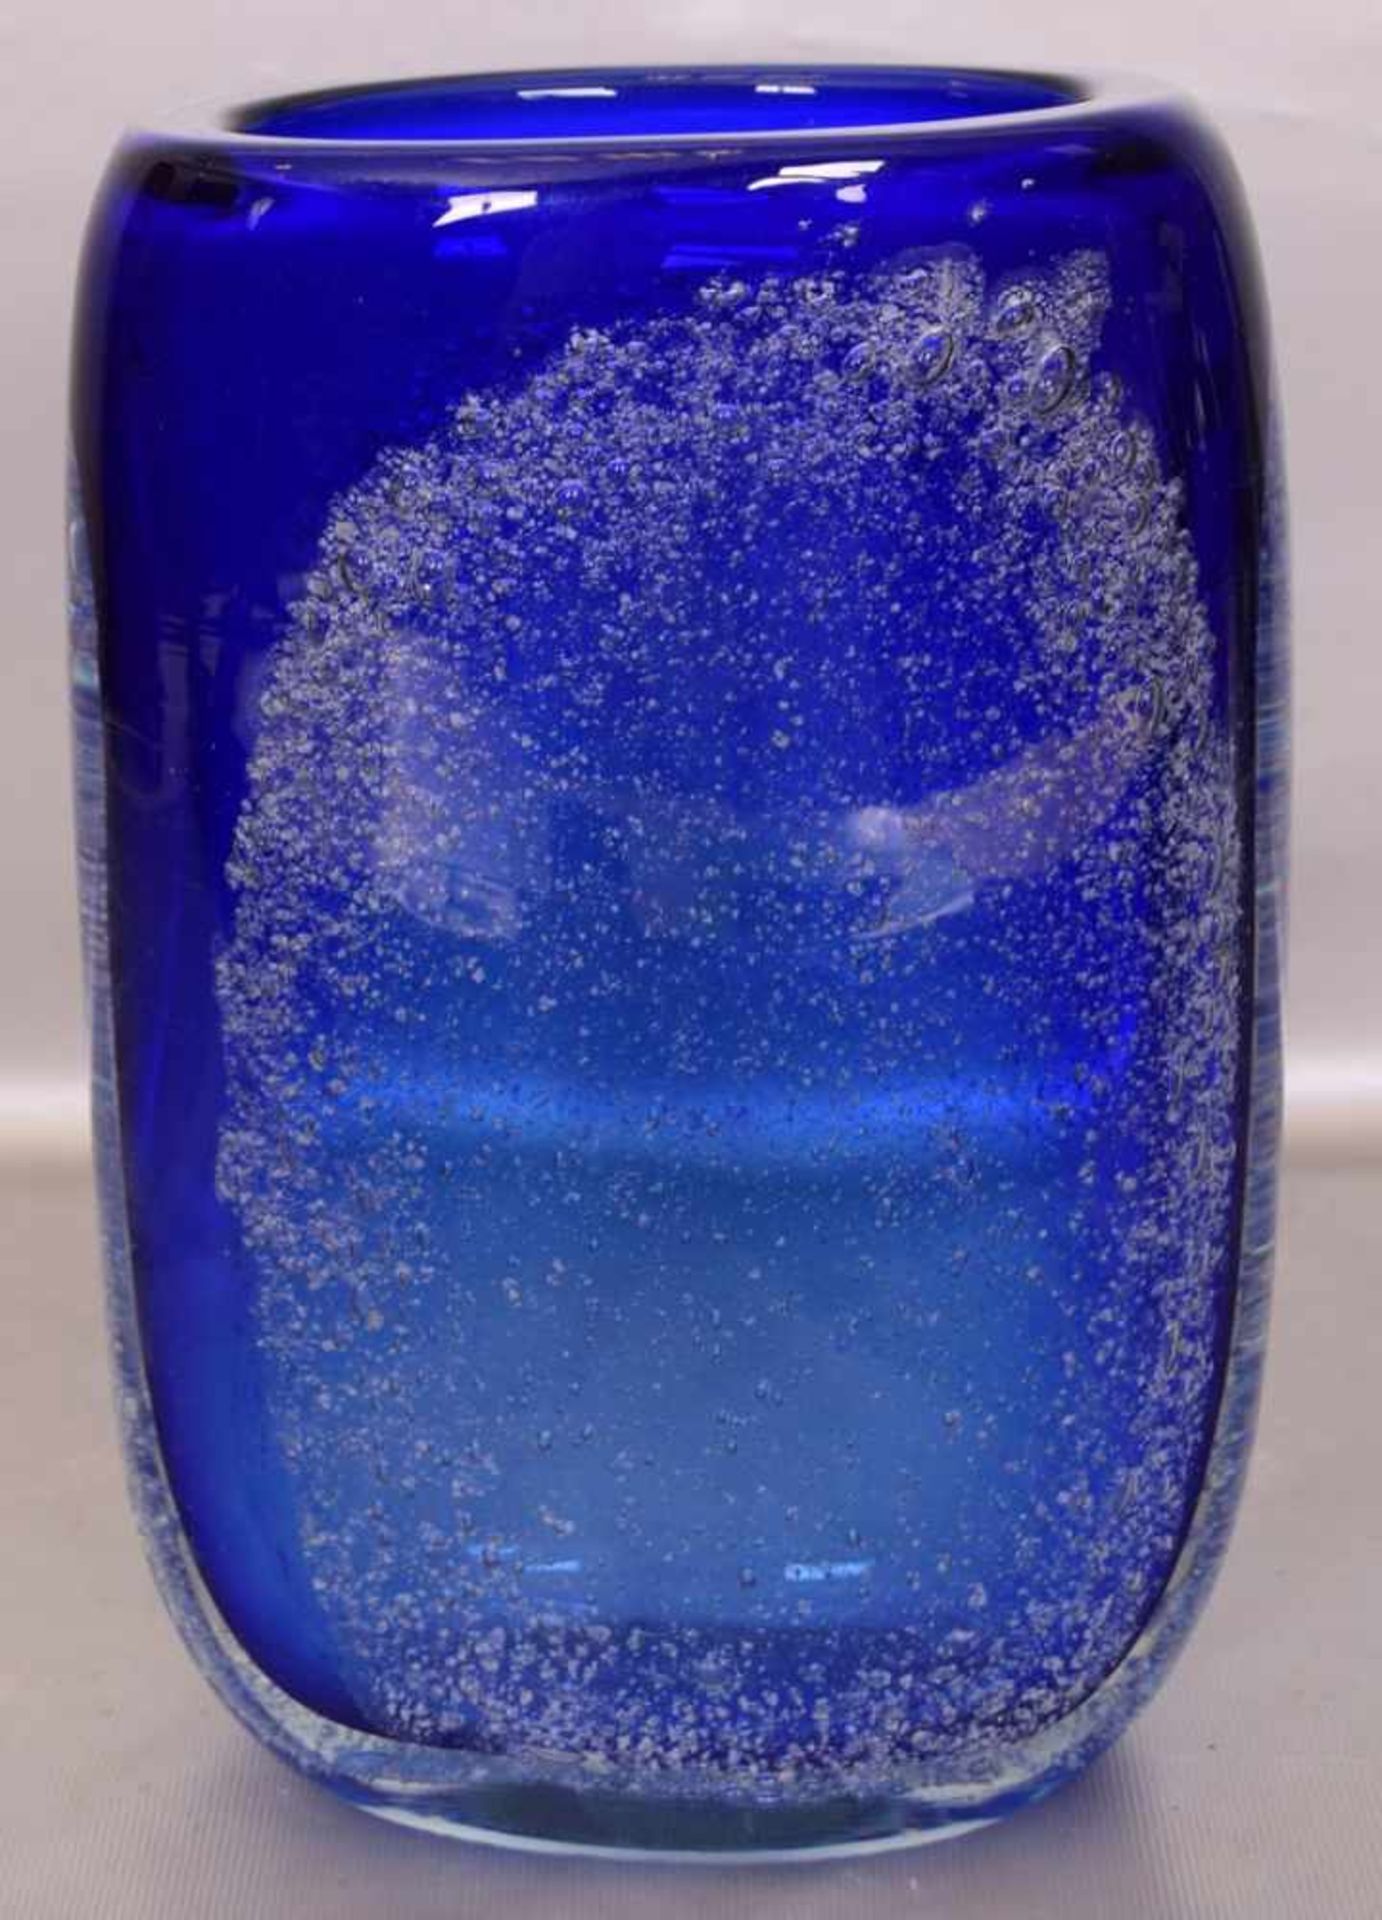 Vasefarbl. Glas, oval, blauer Überfang, mit eingeschmolzenen Luftblasen, H 25 cm, 70er Jahre